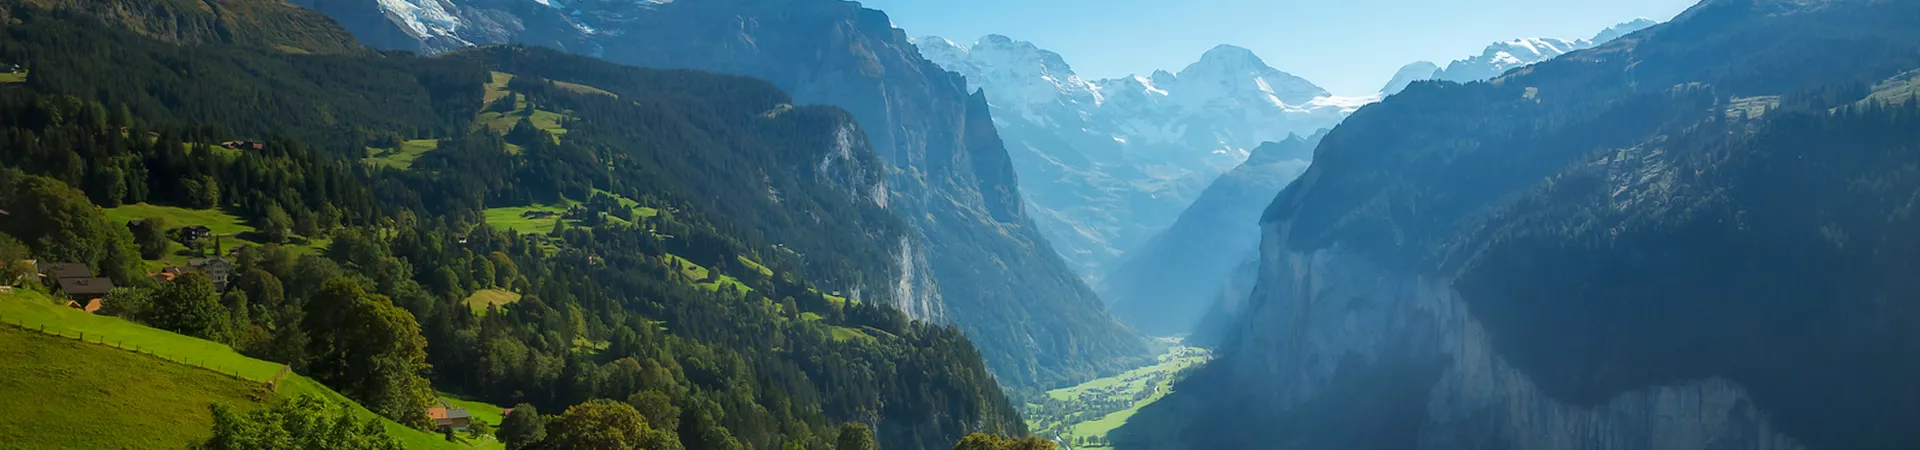 Switzerland Jungfrau